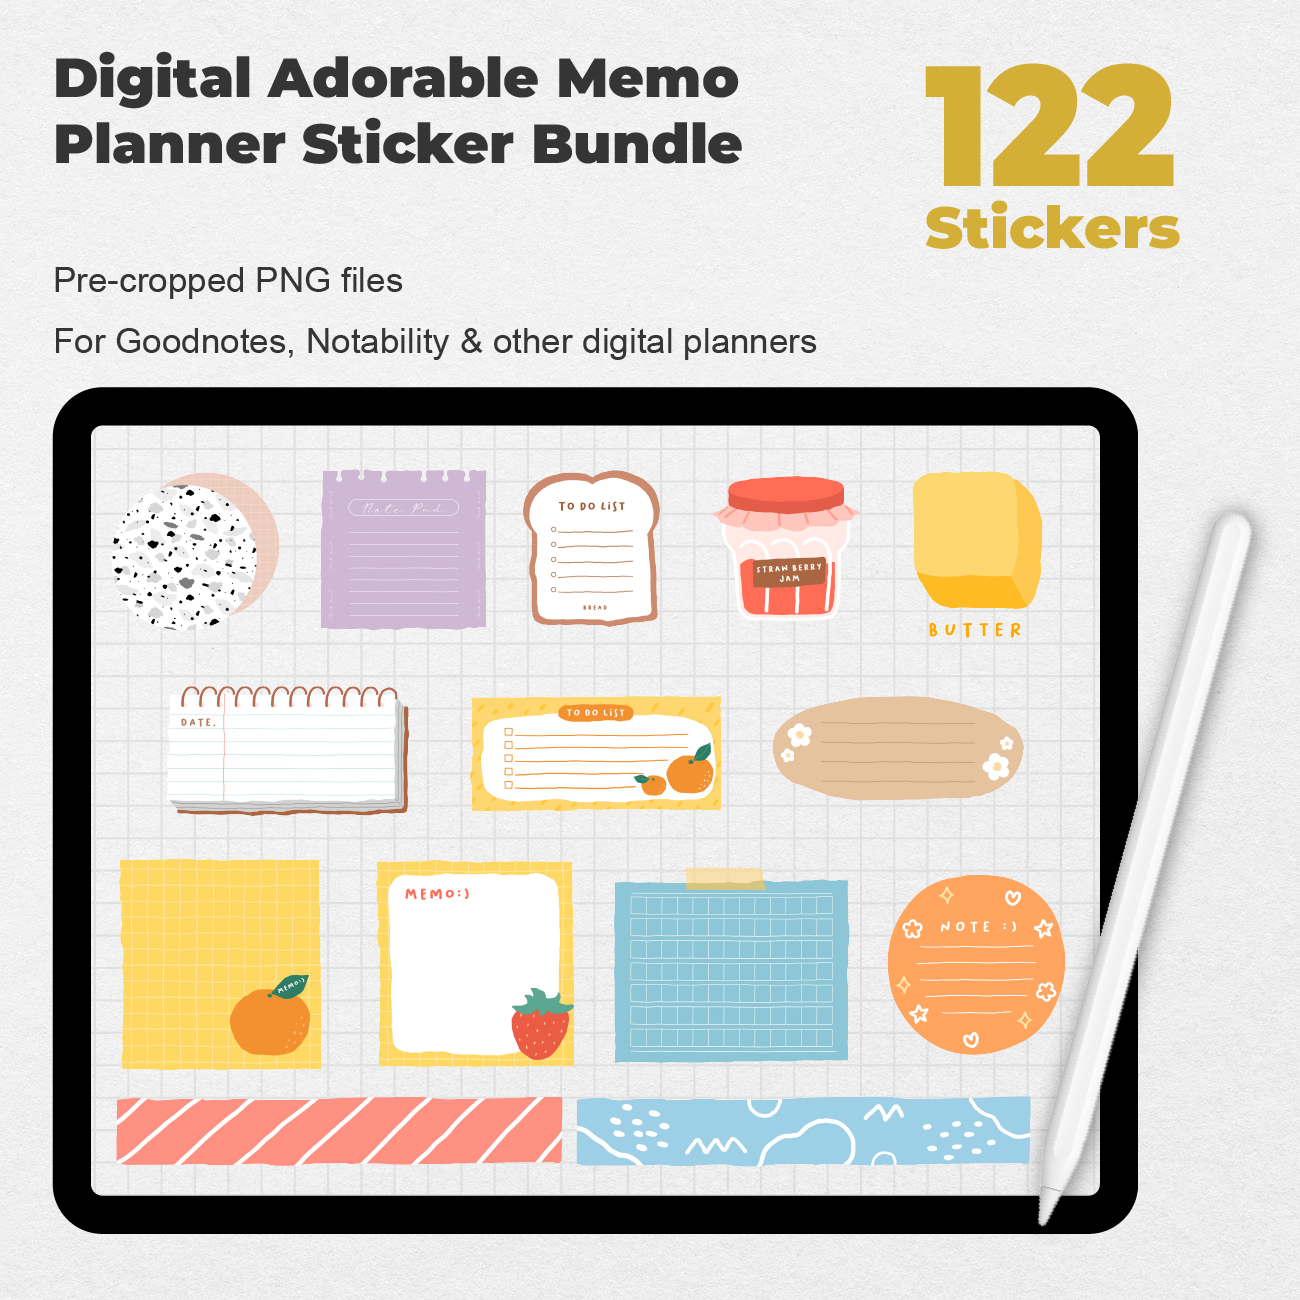 Sticker tweezer • Your Personal Organizer